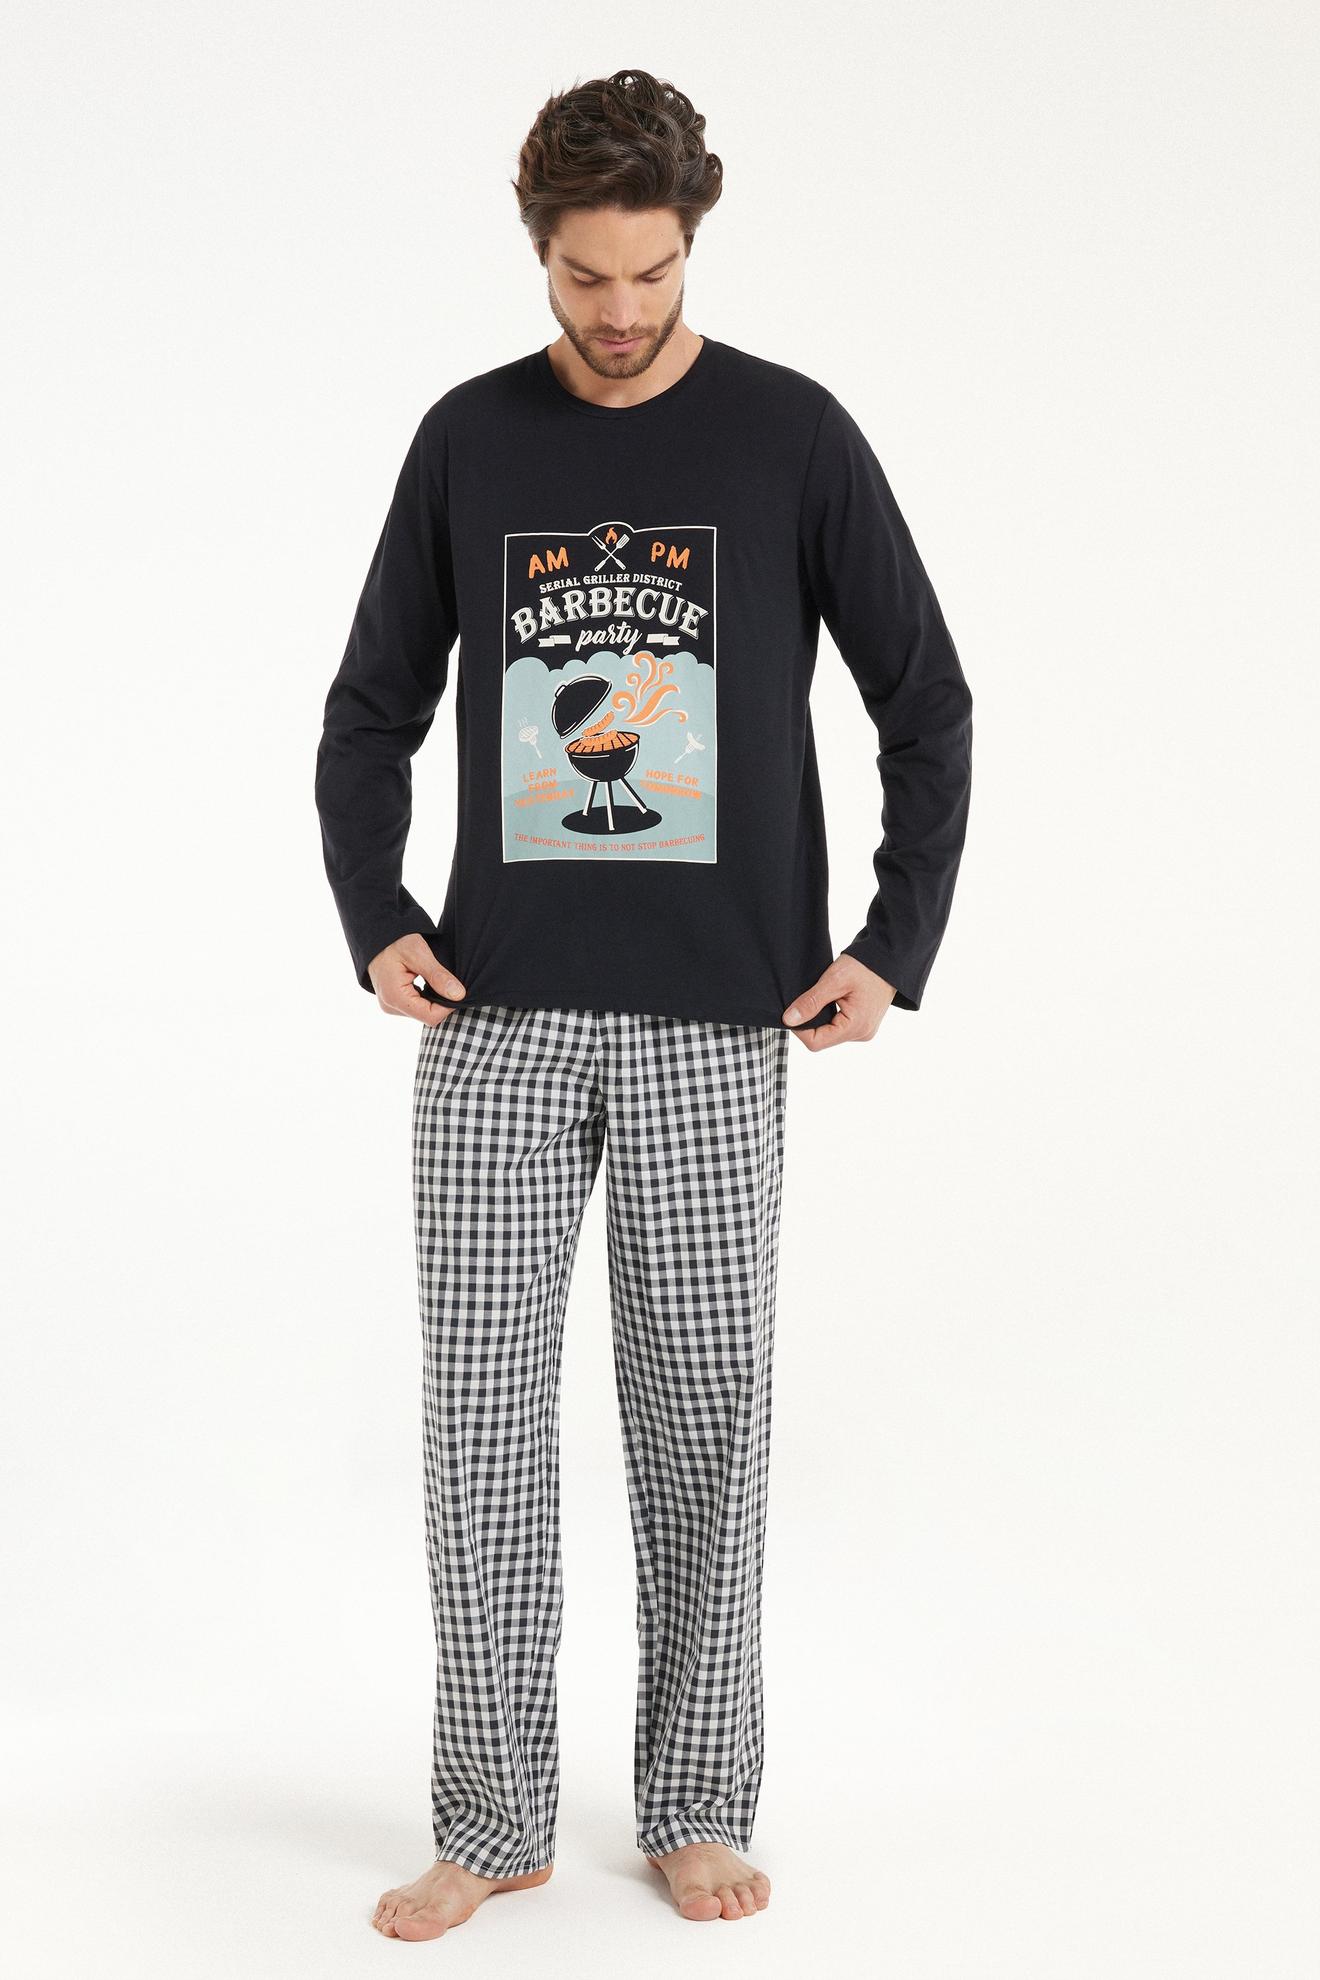 Langer Pyjama aus Baumwolle mit Barbecue-Print für 38,95 CHF in Tezenis